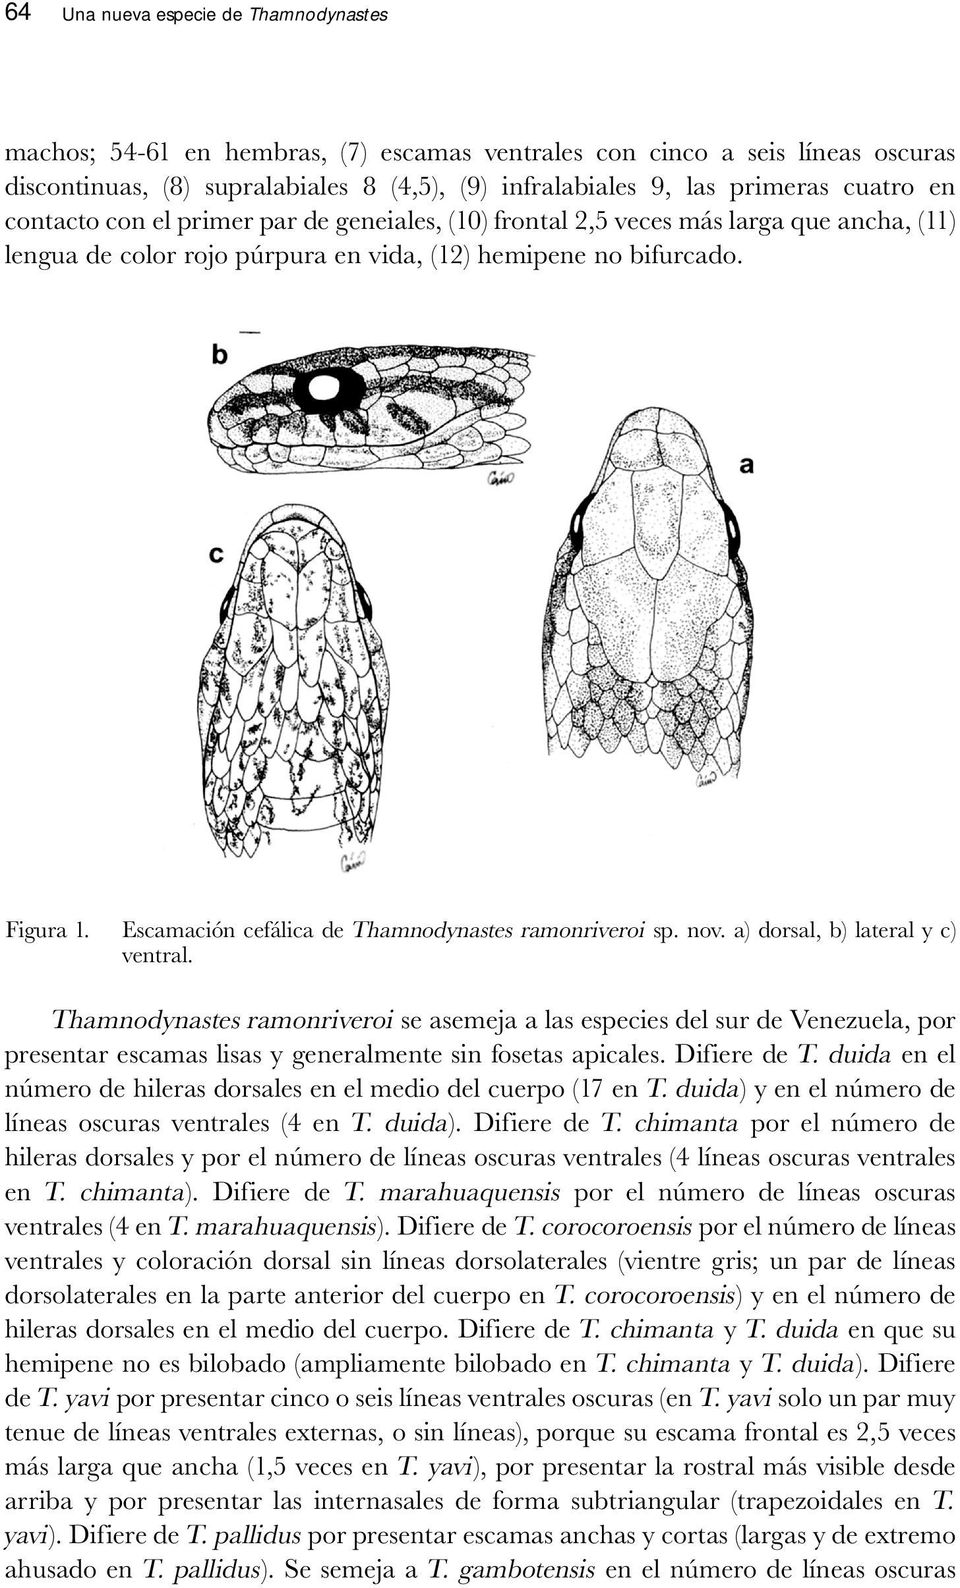 Escamación cefálica de Thamnodynastes ramonriveroi sp. nov. a) dorsal, b) lateral y c) ventral.